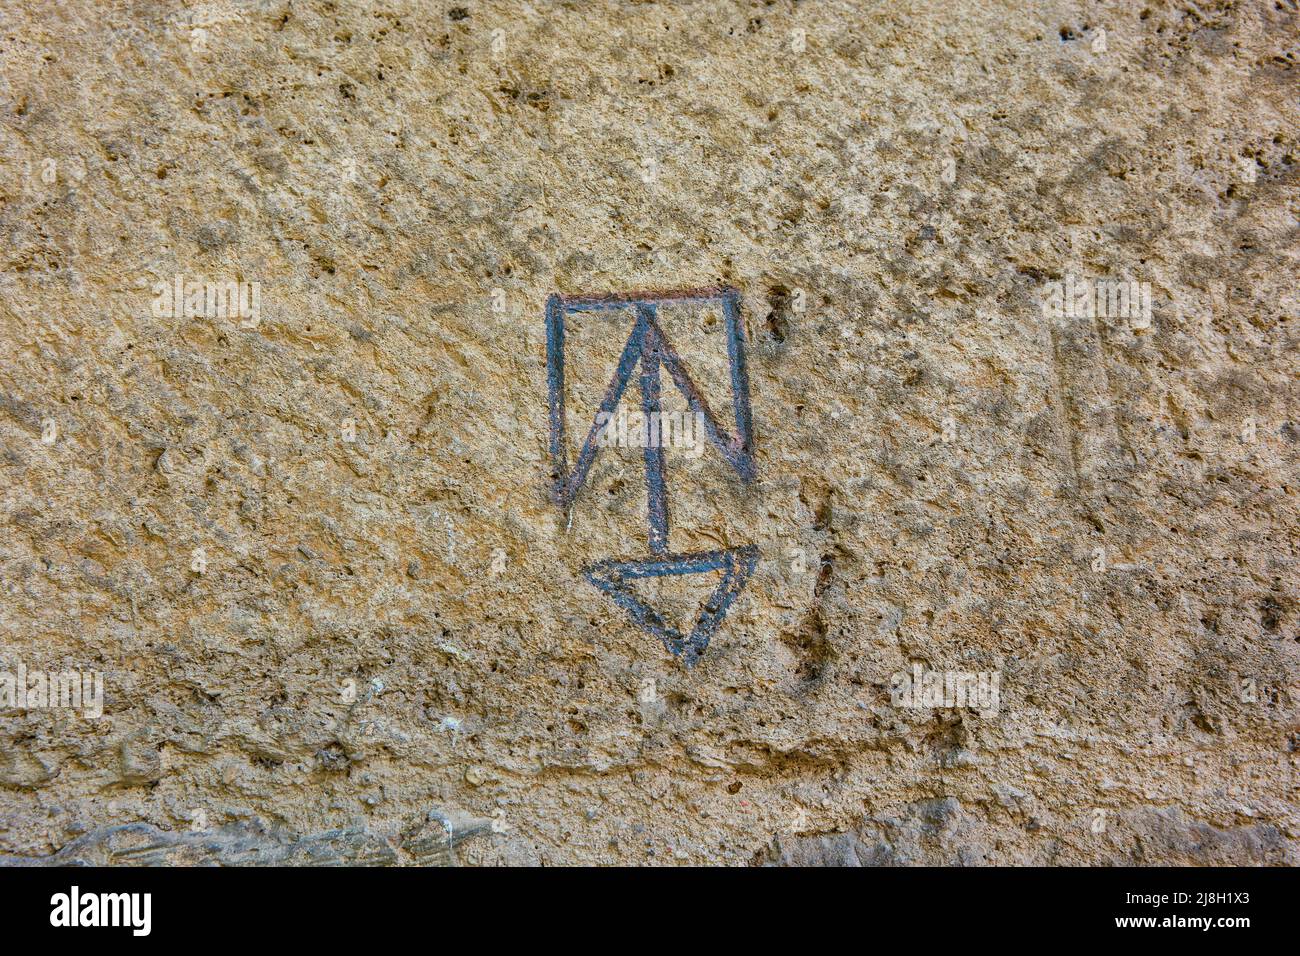 Steinmetzmarke auf den Ascharen des Tenorio-Turms. Erzbischöflicher Palast von Alcala de Henares, Region Madrid, Spanien. Stockfoto